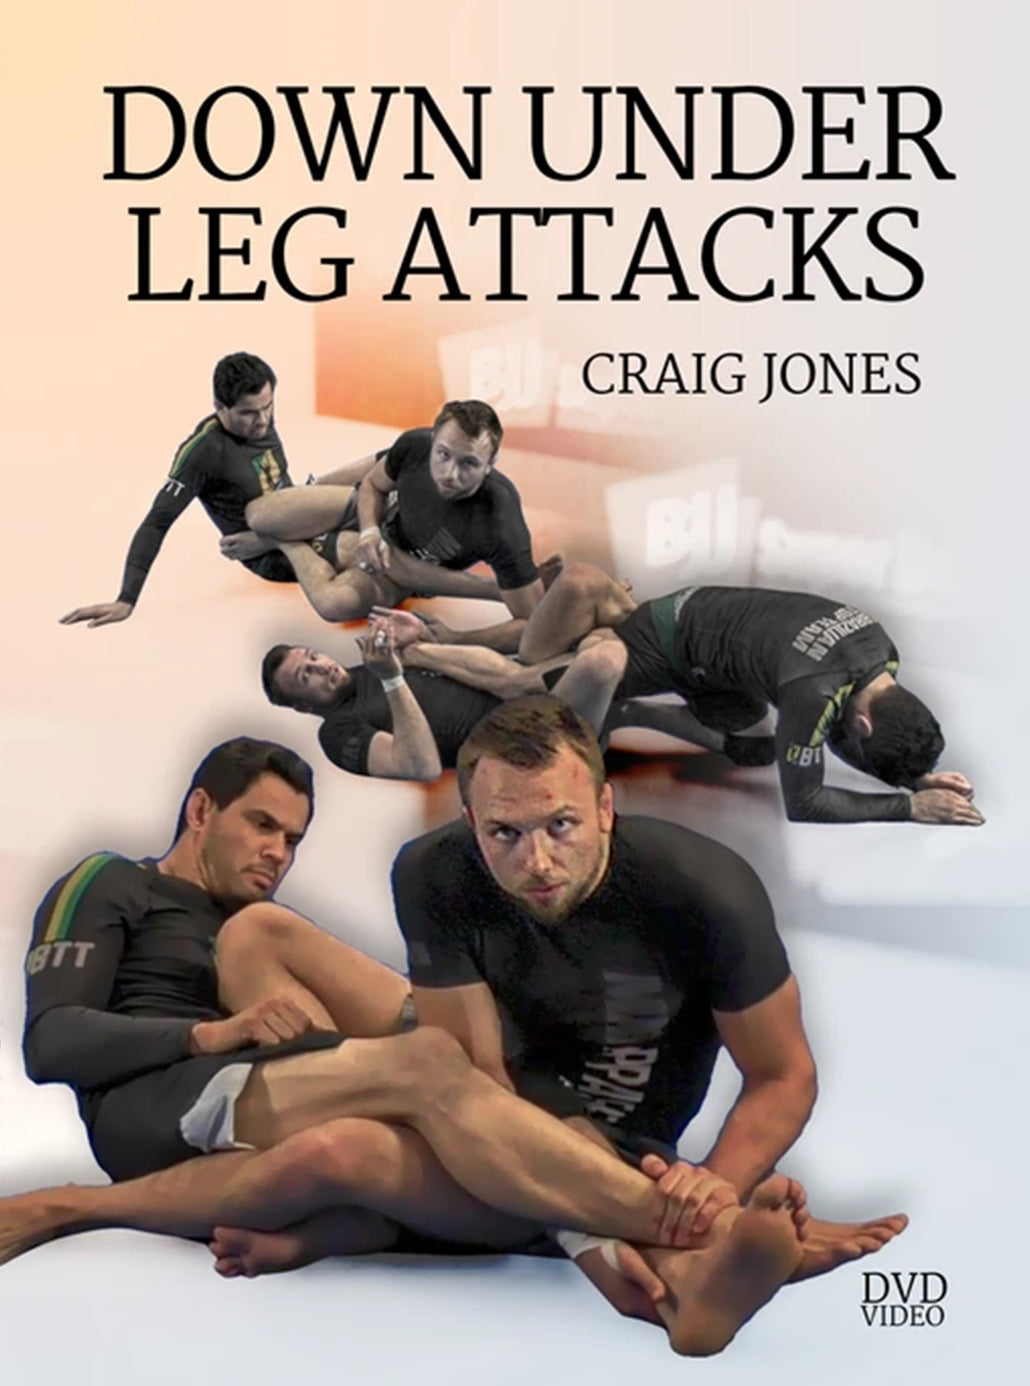 Down Under Leg Attacks by Craig Jones